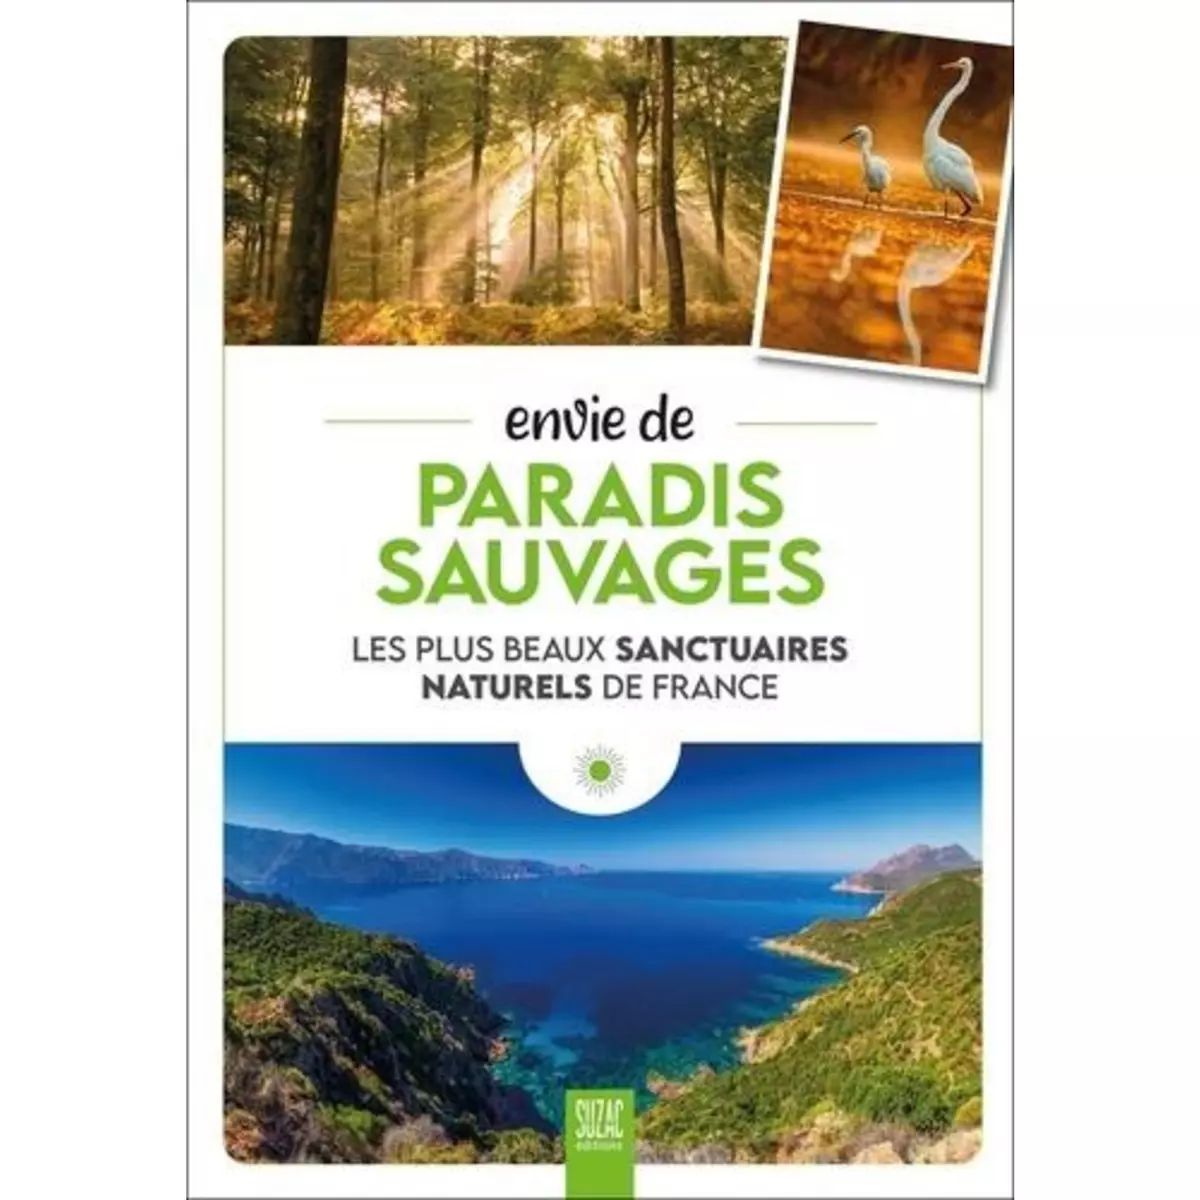  ENVIE DE PARADIS SAUVAGES. LES PLUS BEAUX SANCTUAIRES NATURELS DE FRANCE, Jutier Sophie